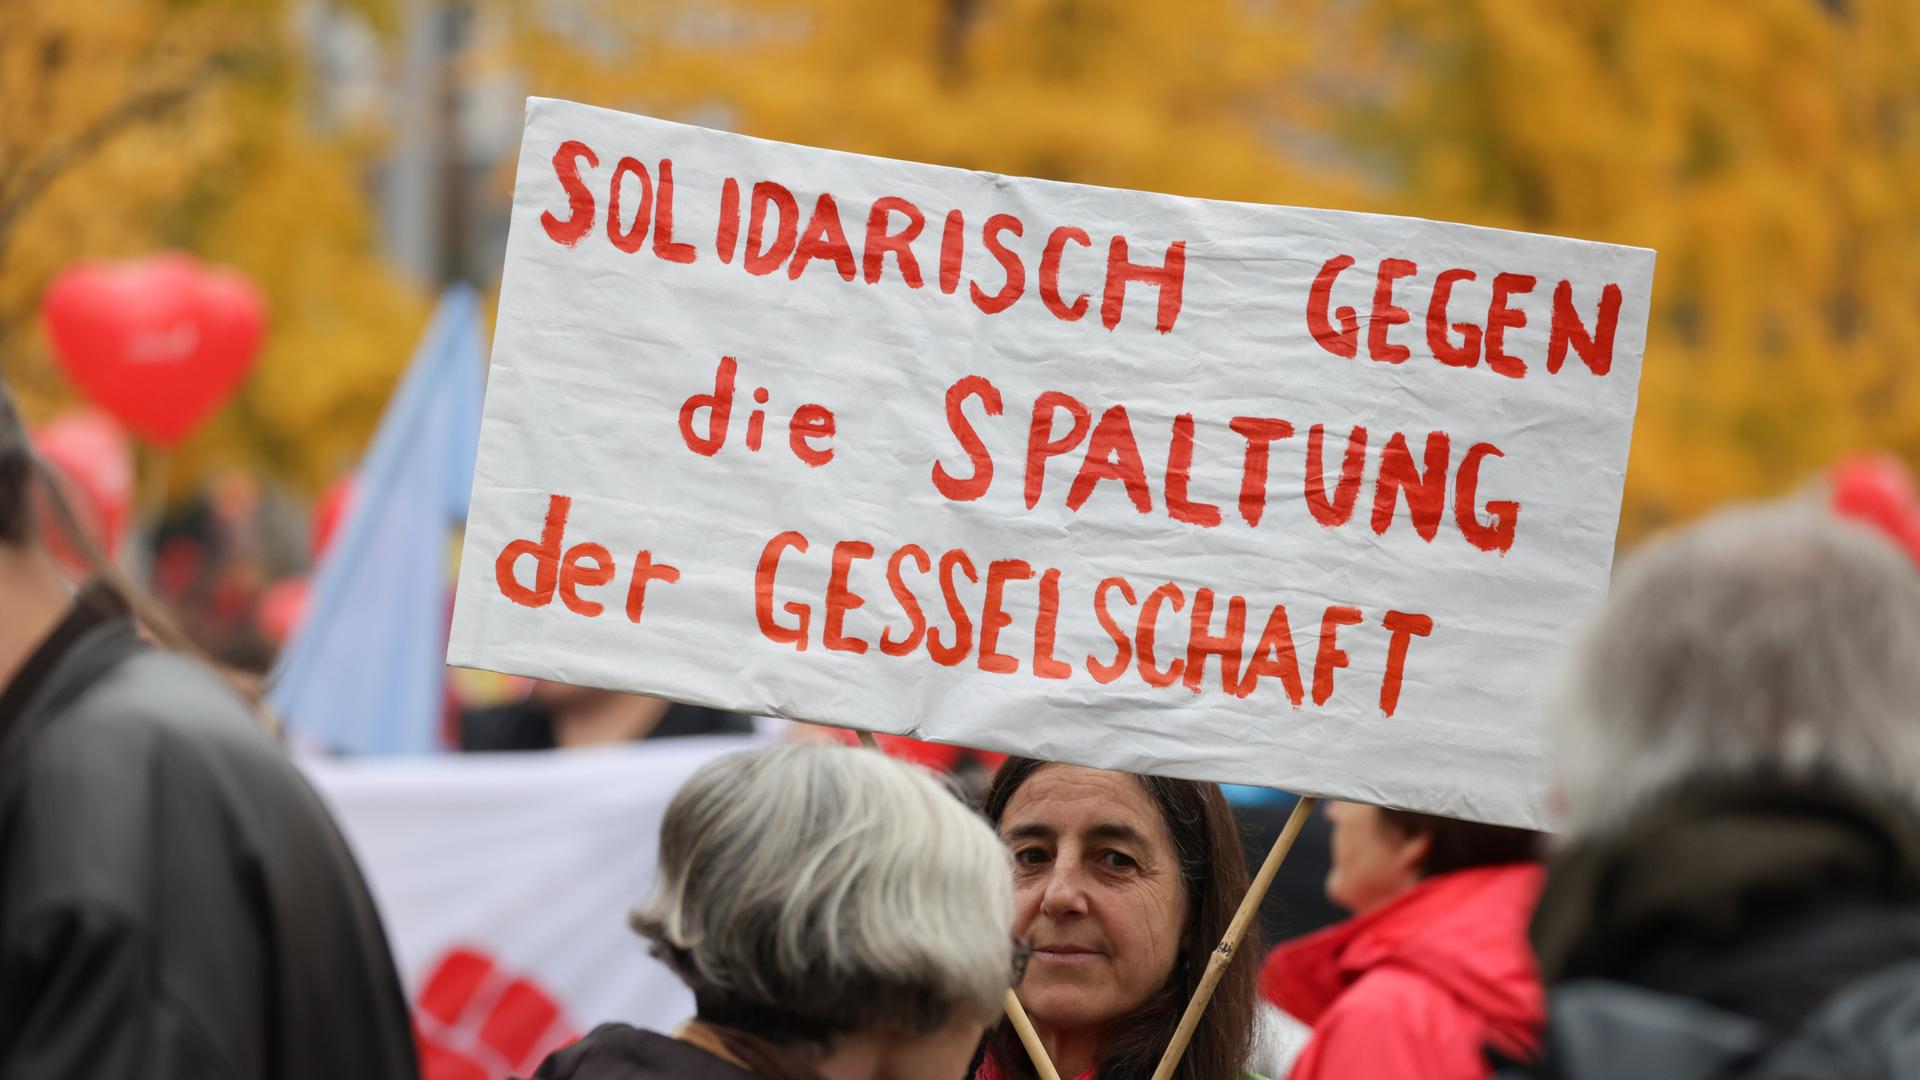 Ein Transparent mit der Aufschrift "Solidarisch gegen die Spaltung der Gesellschaft" ist bei einer Demonstration zu sehen.